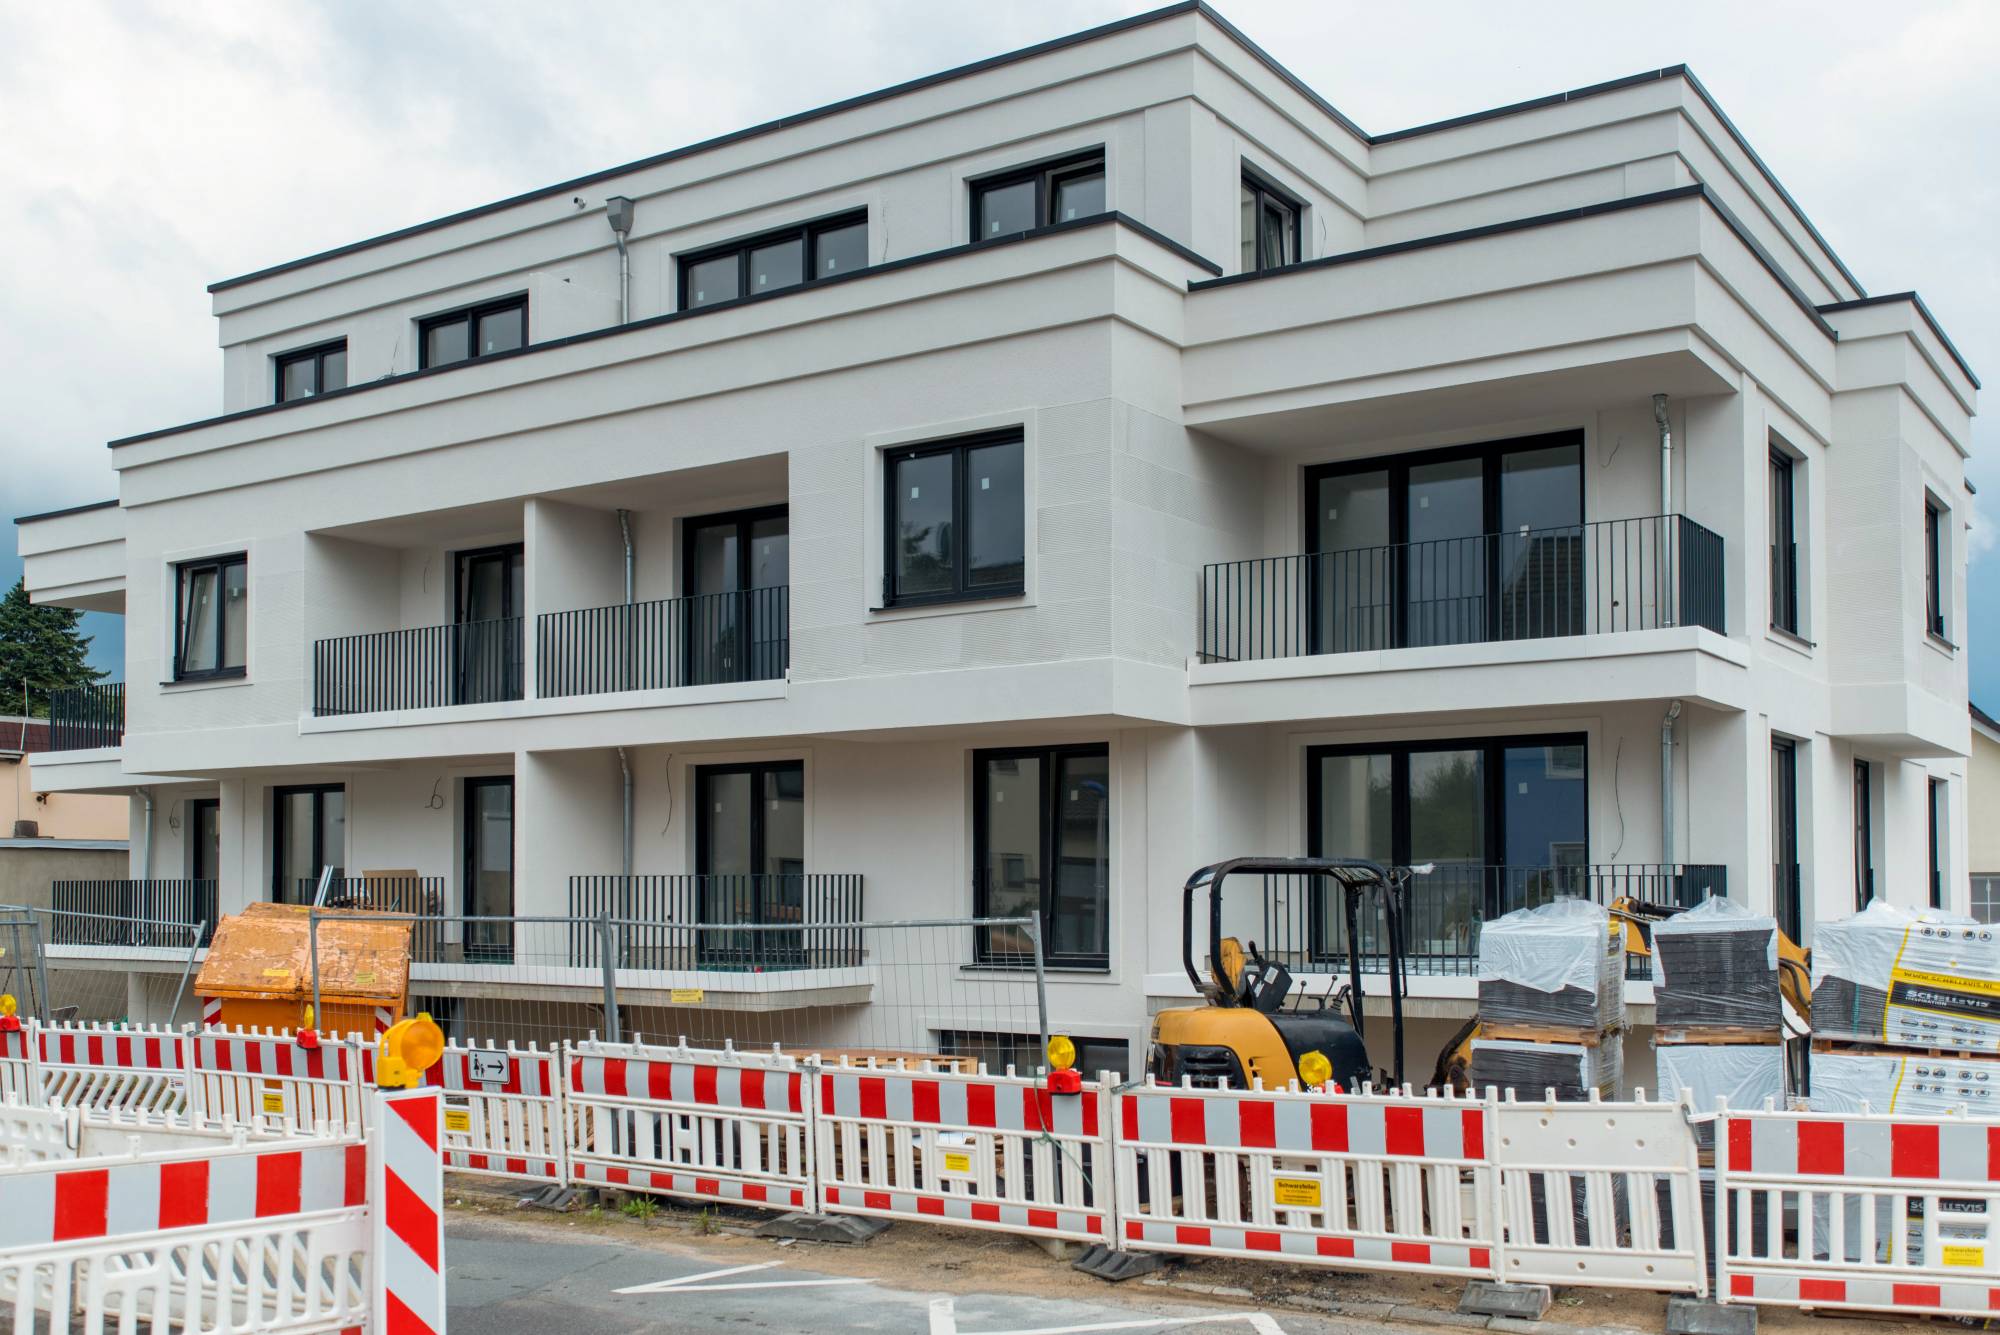 Fertiggestellter Neubau mit Eigentumswohnungen in Egelsbach